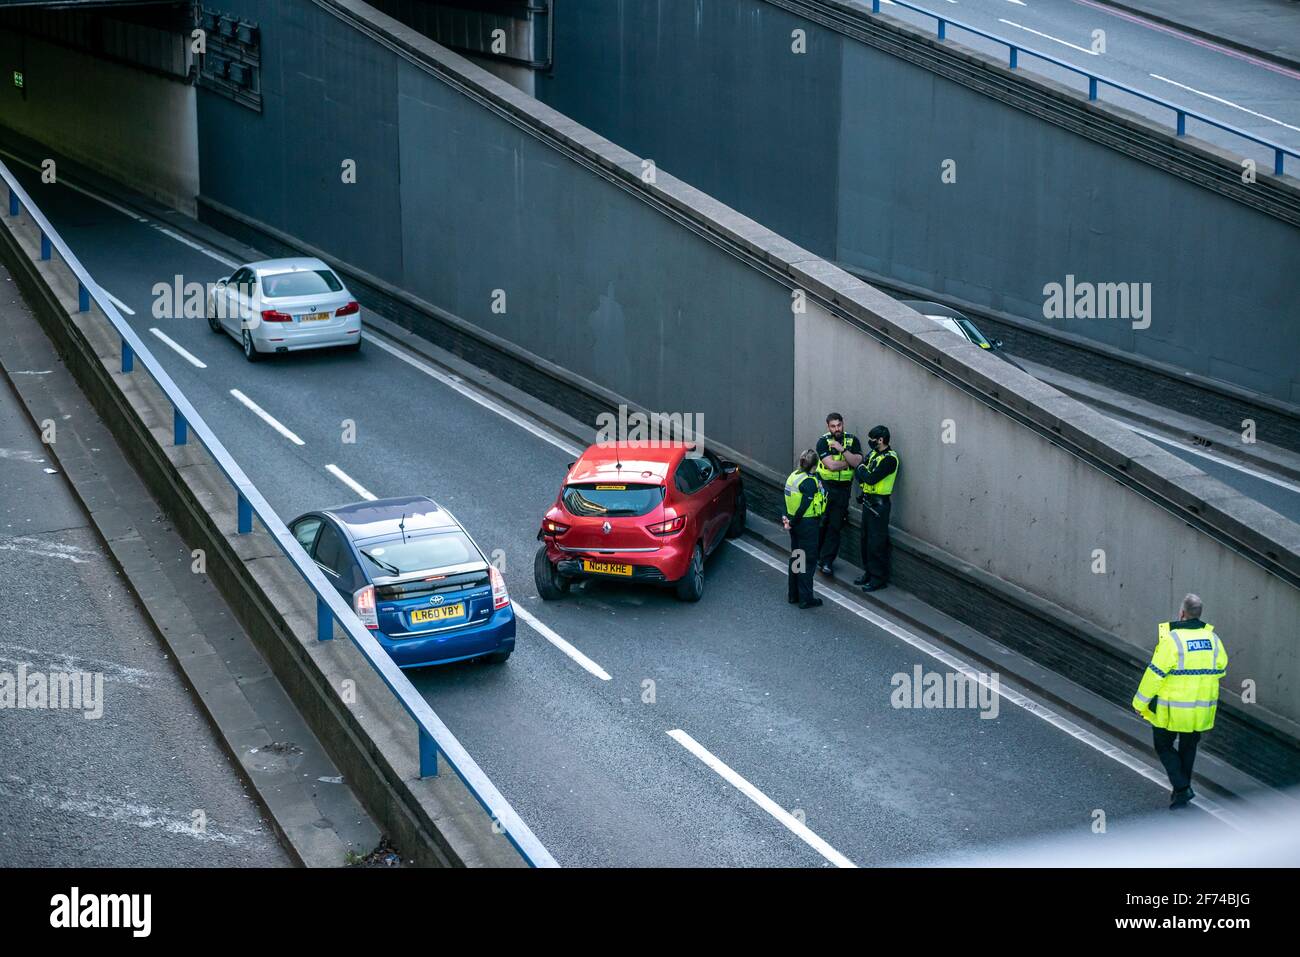 Police debout près d'une voiture écrasée à l'ouverture d'un tunnel sur Great Charles Street Queensway dans le centre-ville de Birmingham, Royaume-Uni Banque D'Images